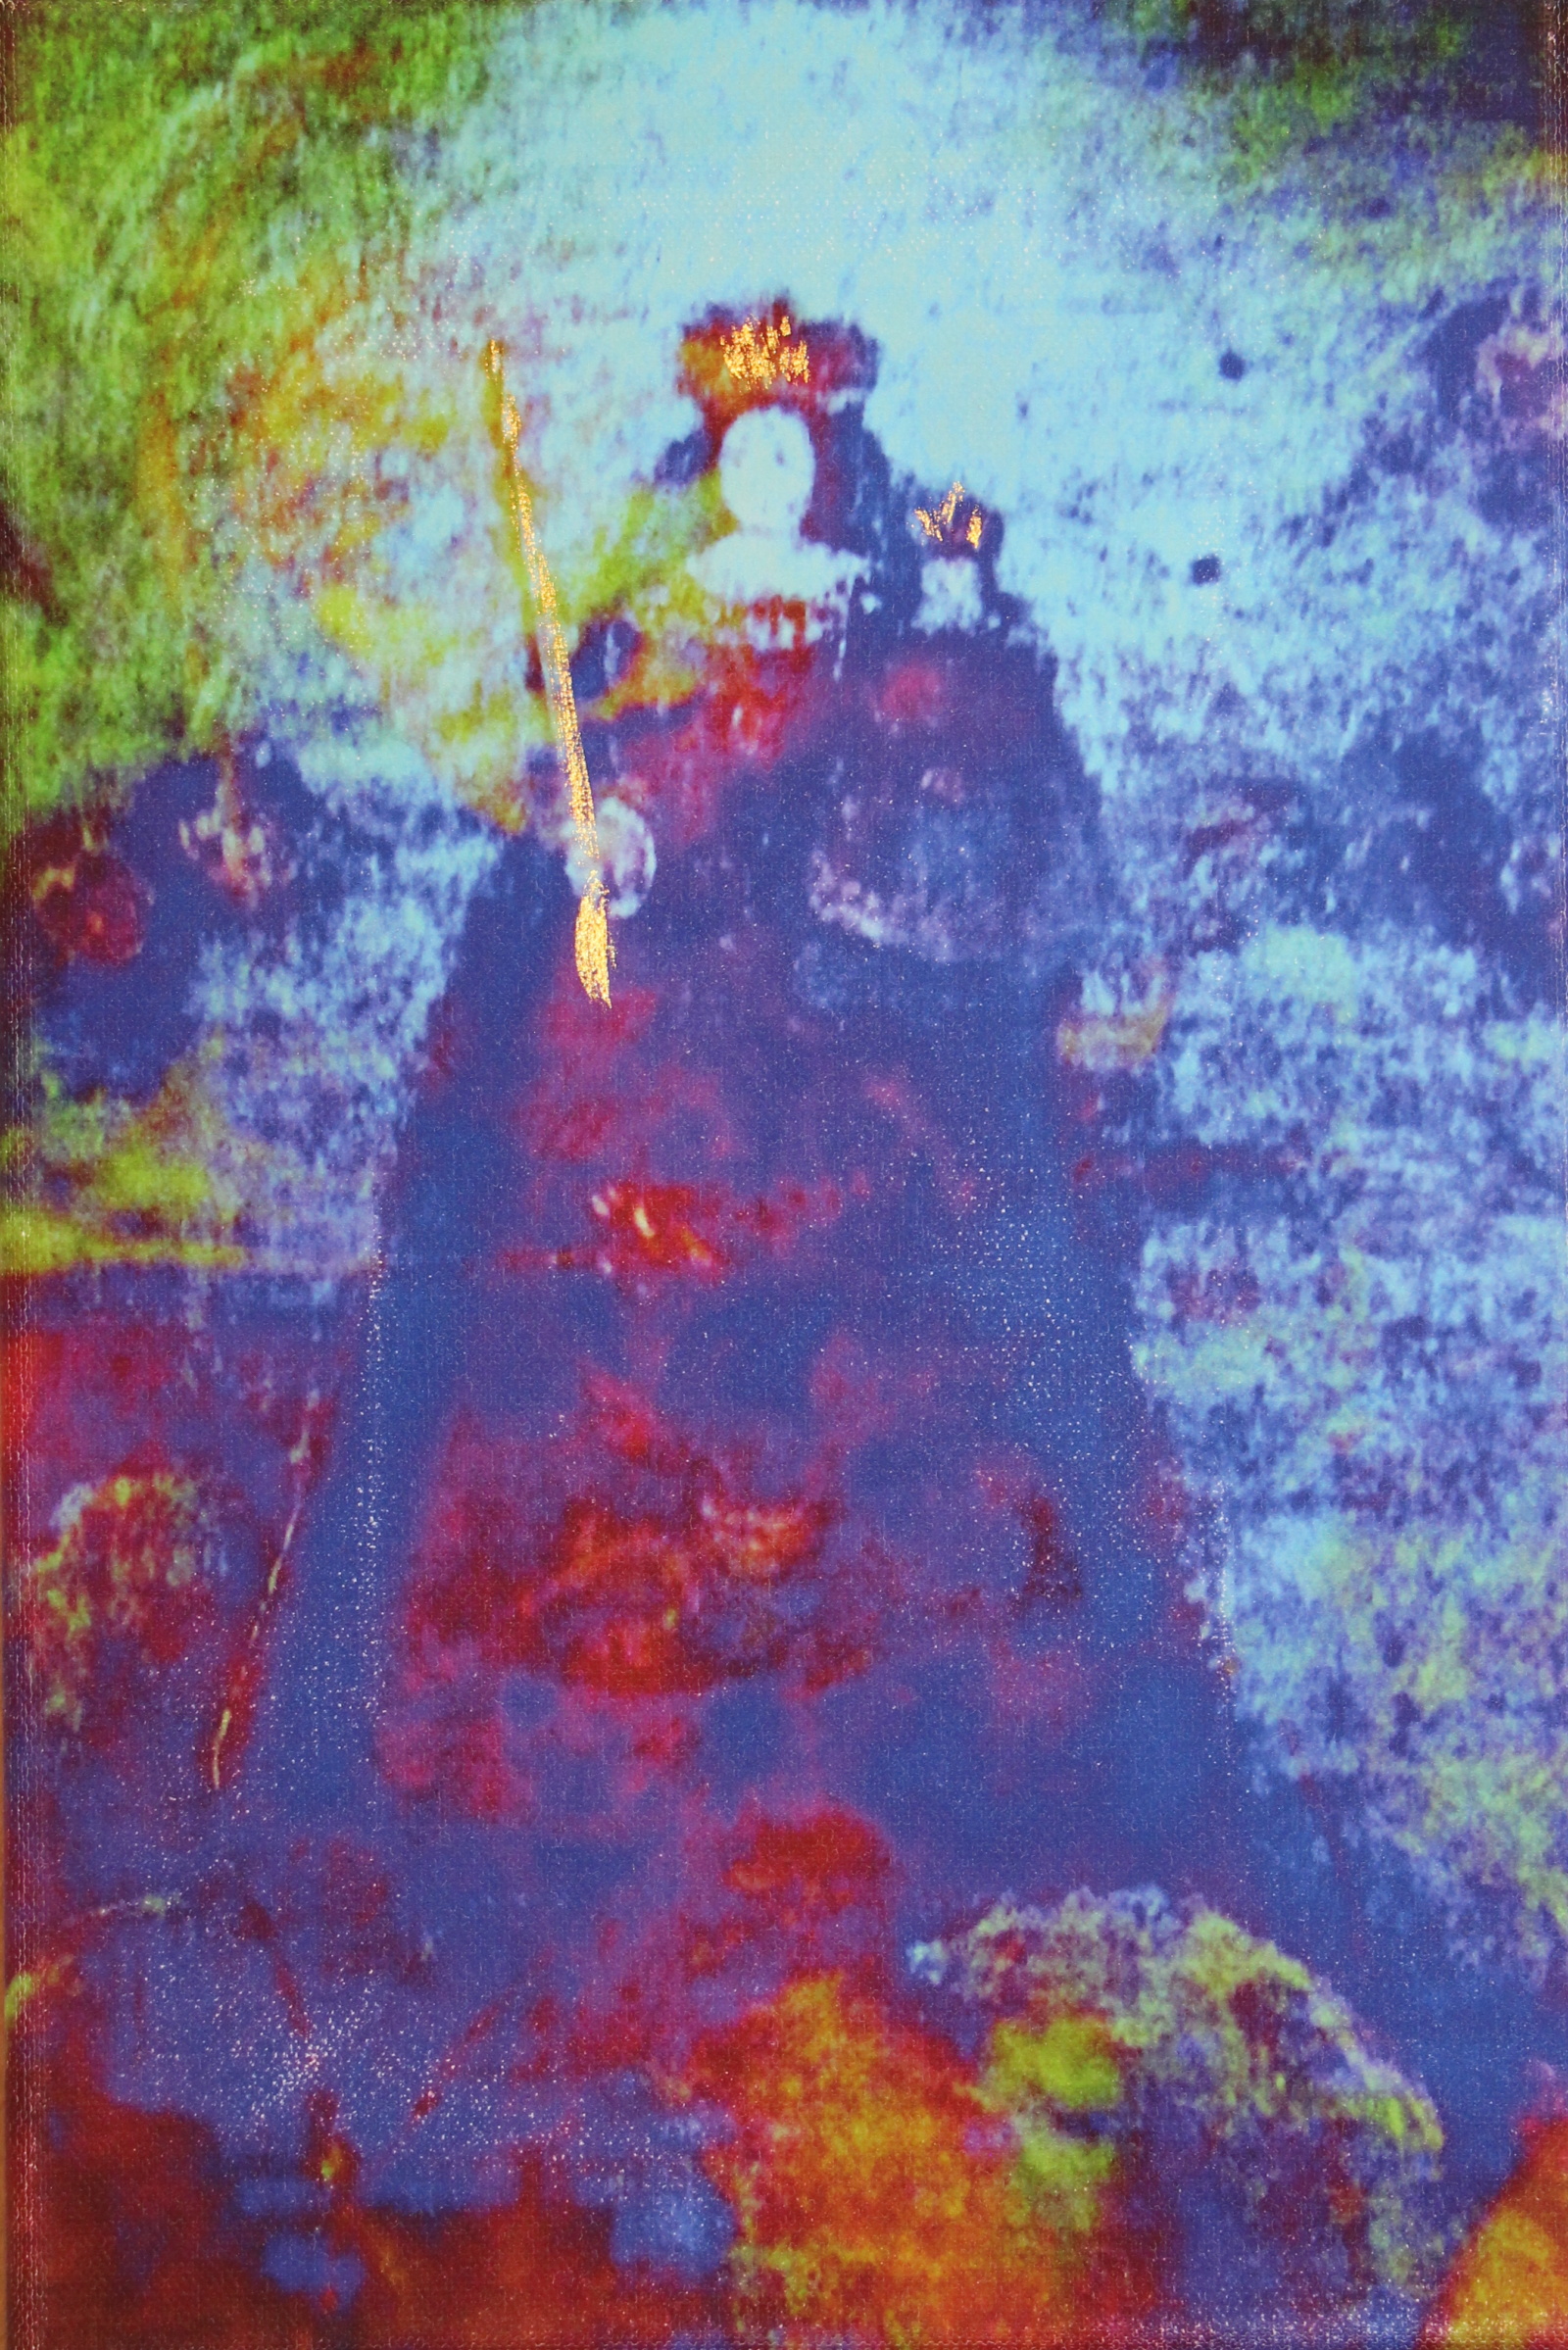 Annelies Štrba, Madonna 016, 2014
Pigment print on canvas, mixed media
30 x 20 cm
Unique